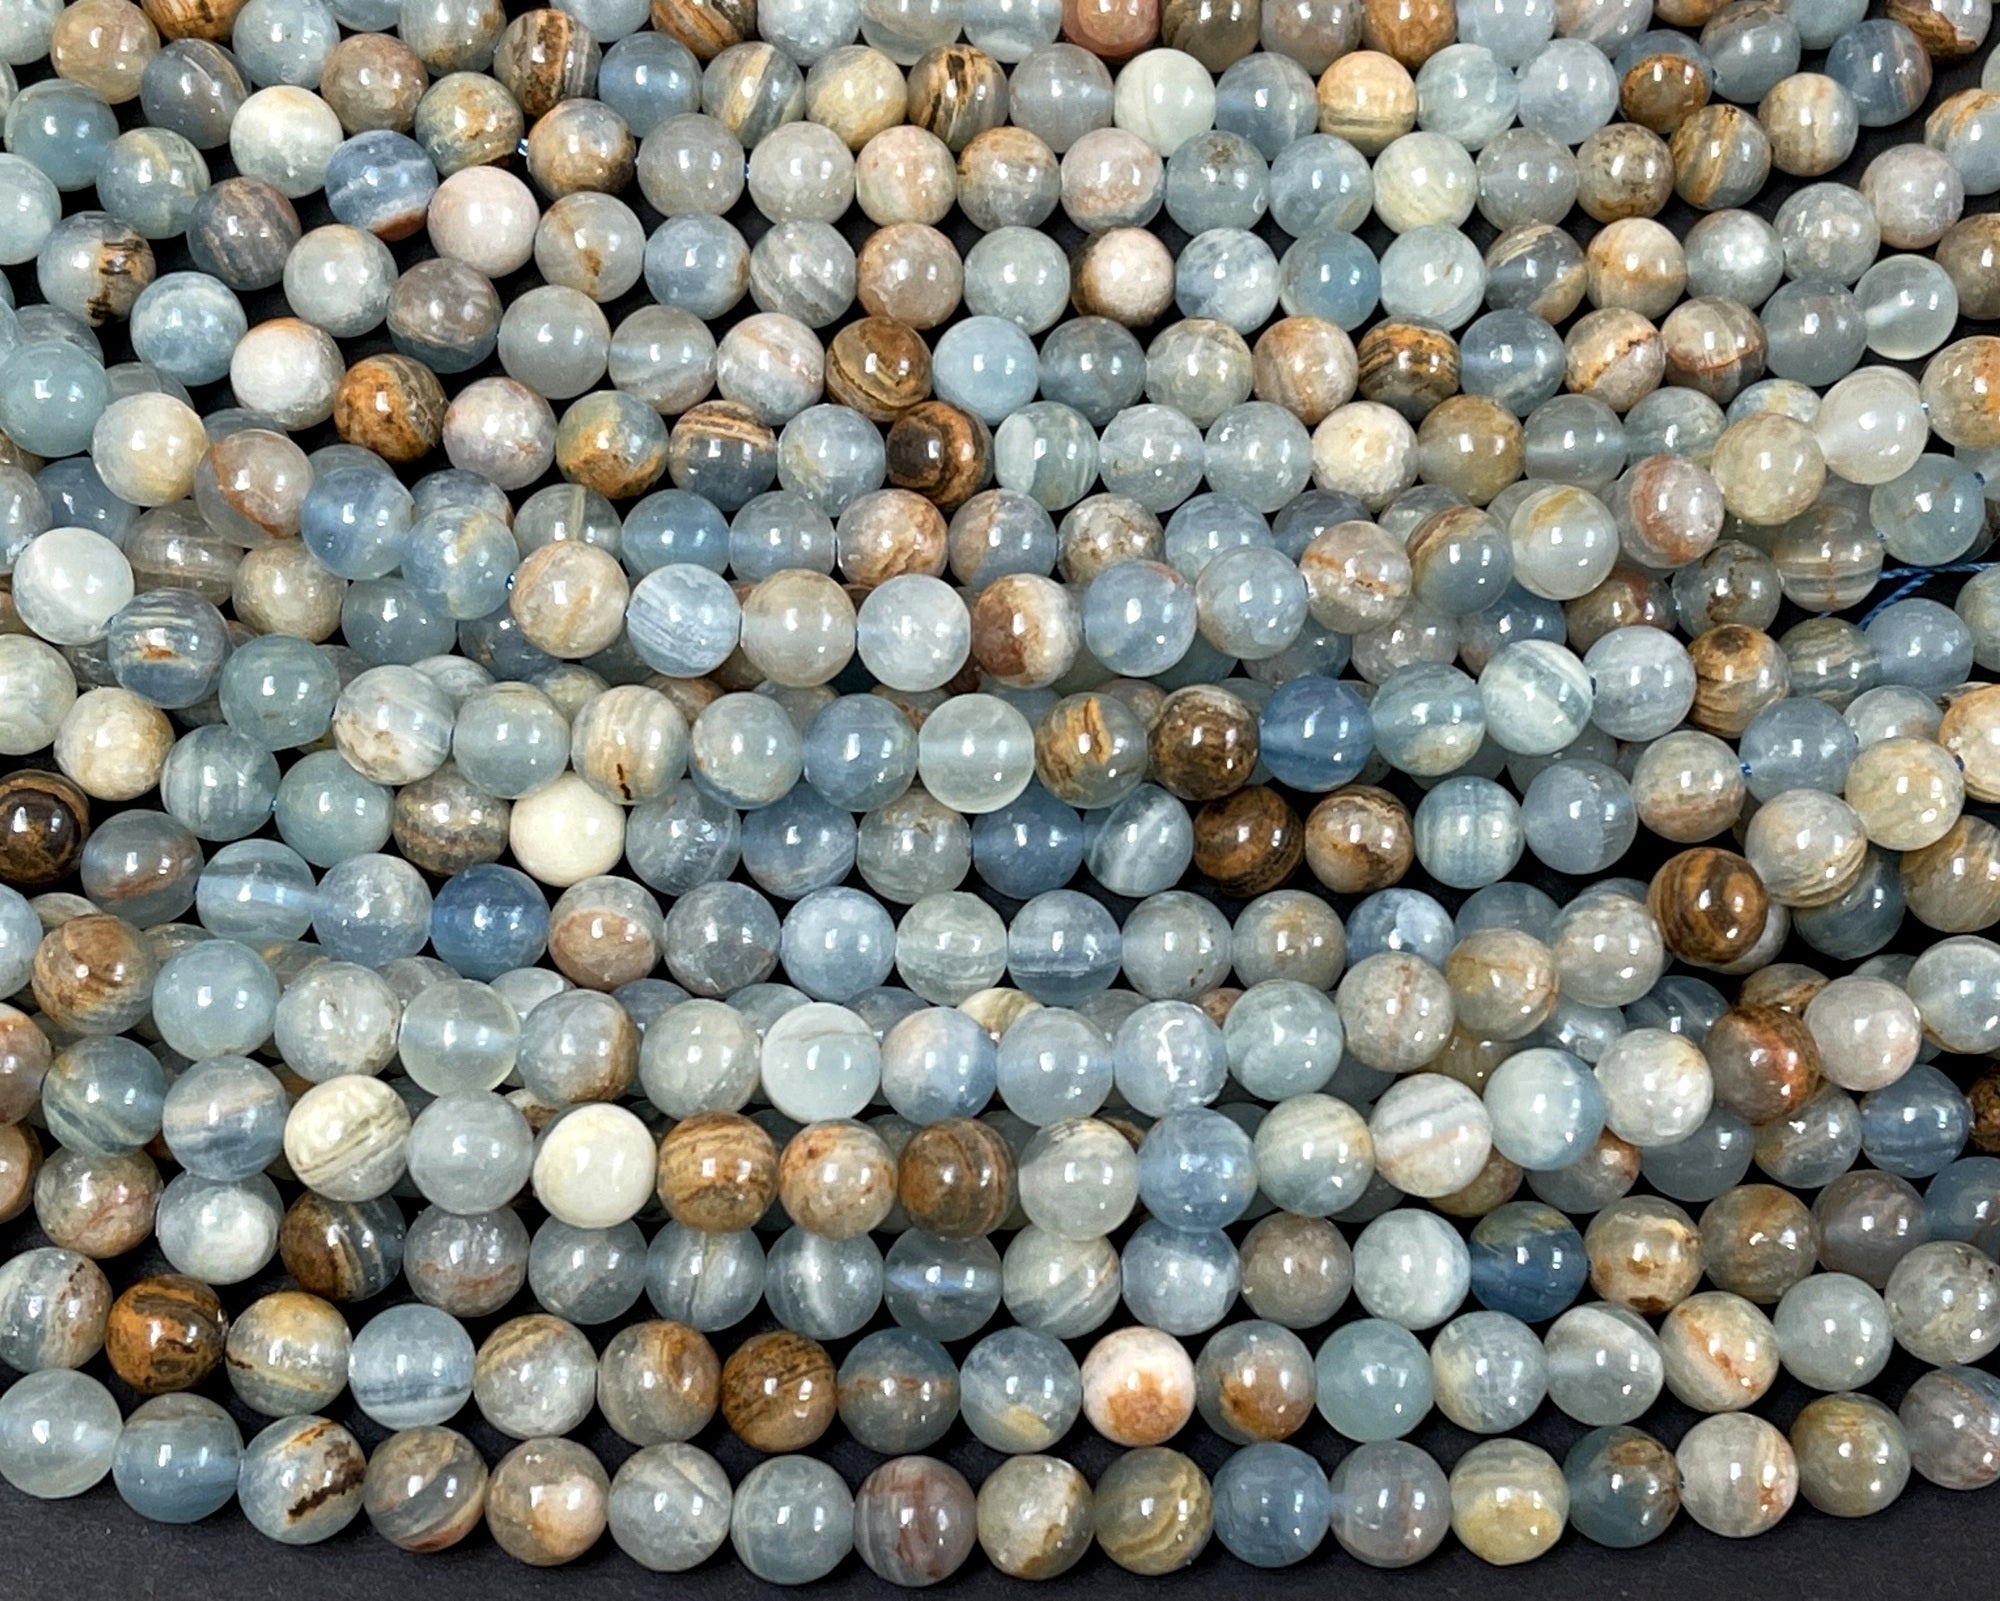 Argentina Lemurian Aquatine Calcite 8mm round natural gemstone beads 15.5" strand